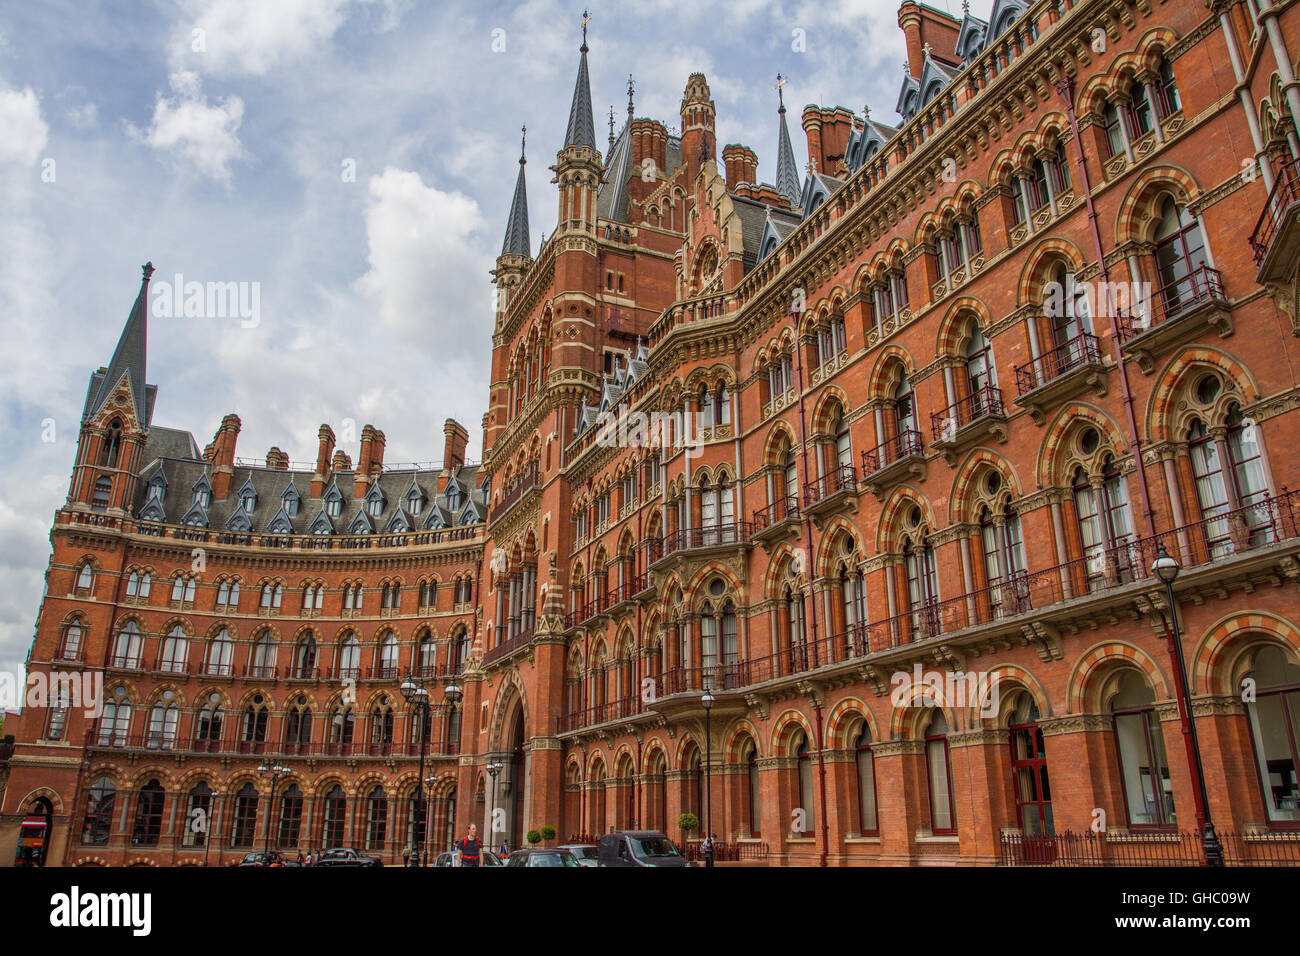 Die gekrümmte Fassade und das Äußere des St Pancras Renaissance Hotel in London, das aufwändige, gotische architektonisches Detail. Stockfoto